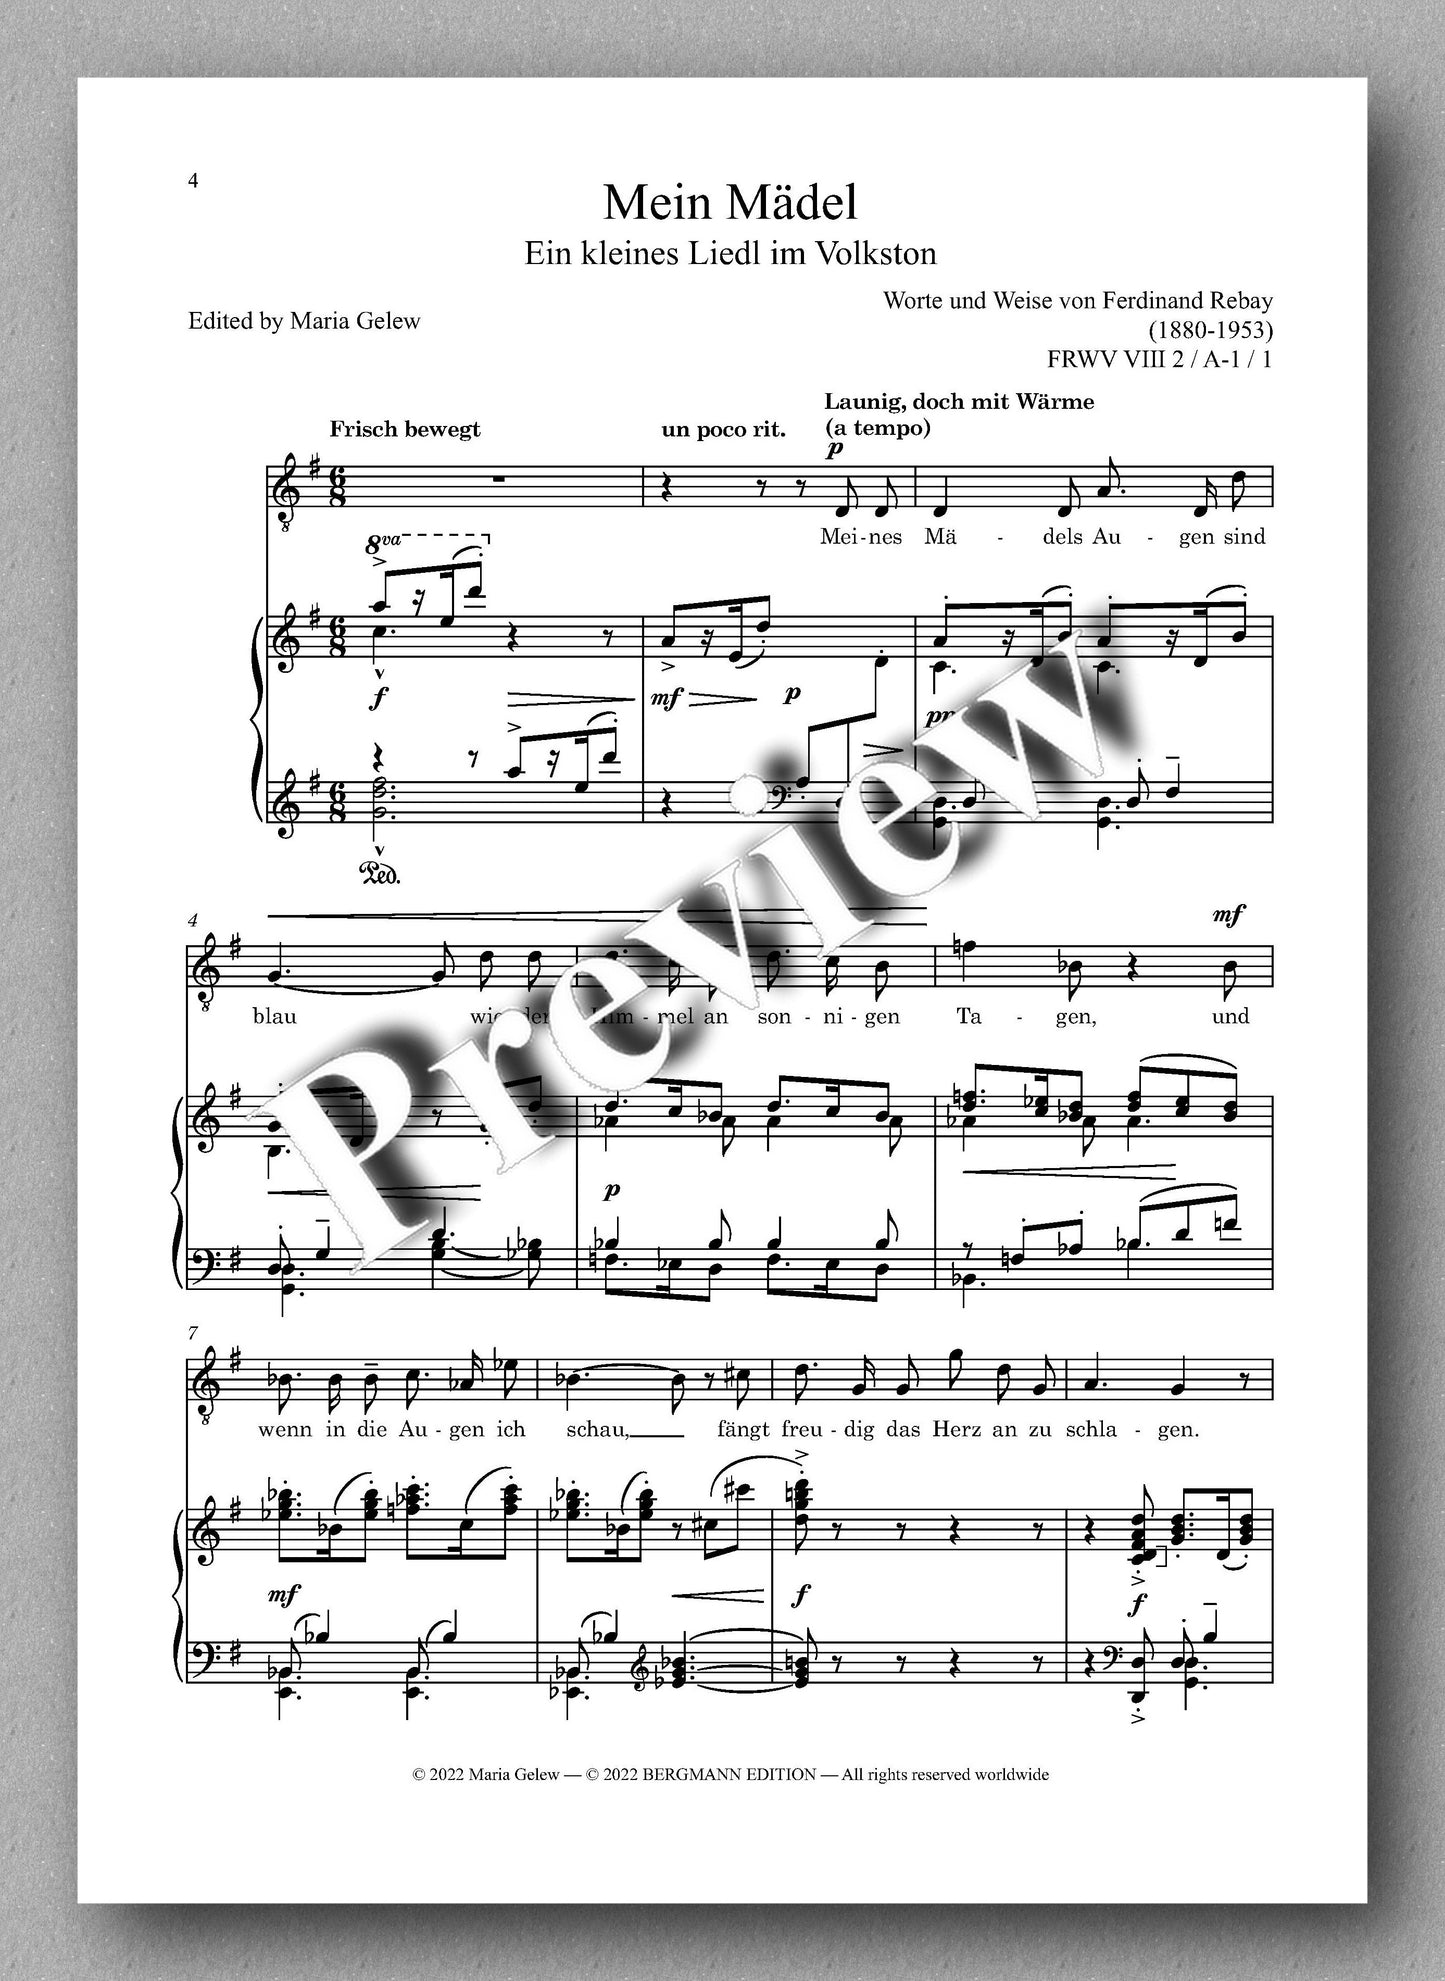 Ferdinand Rebay, Lieder nach eigenen Texten (1916-1917) - Preview of the music score 1